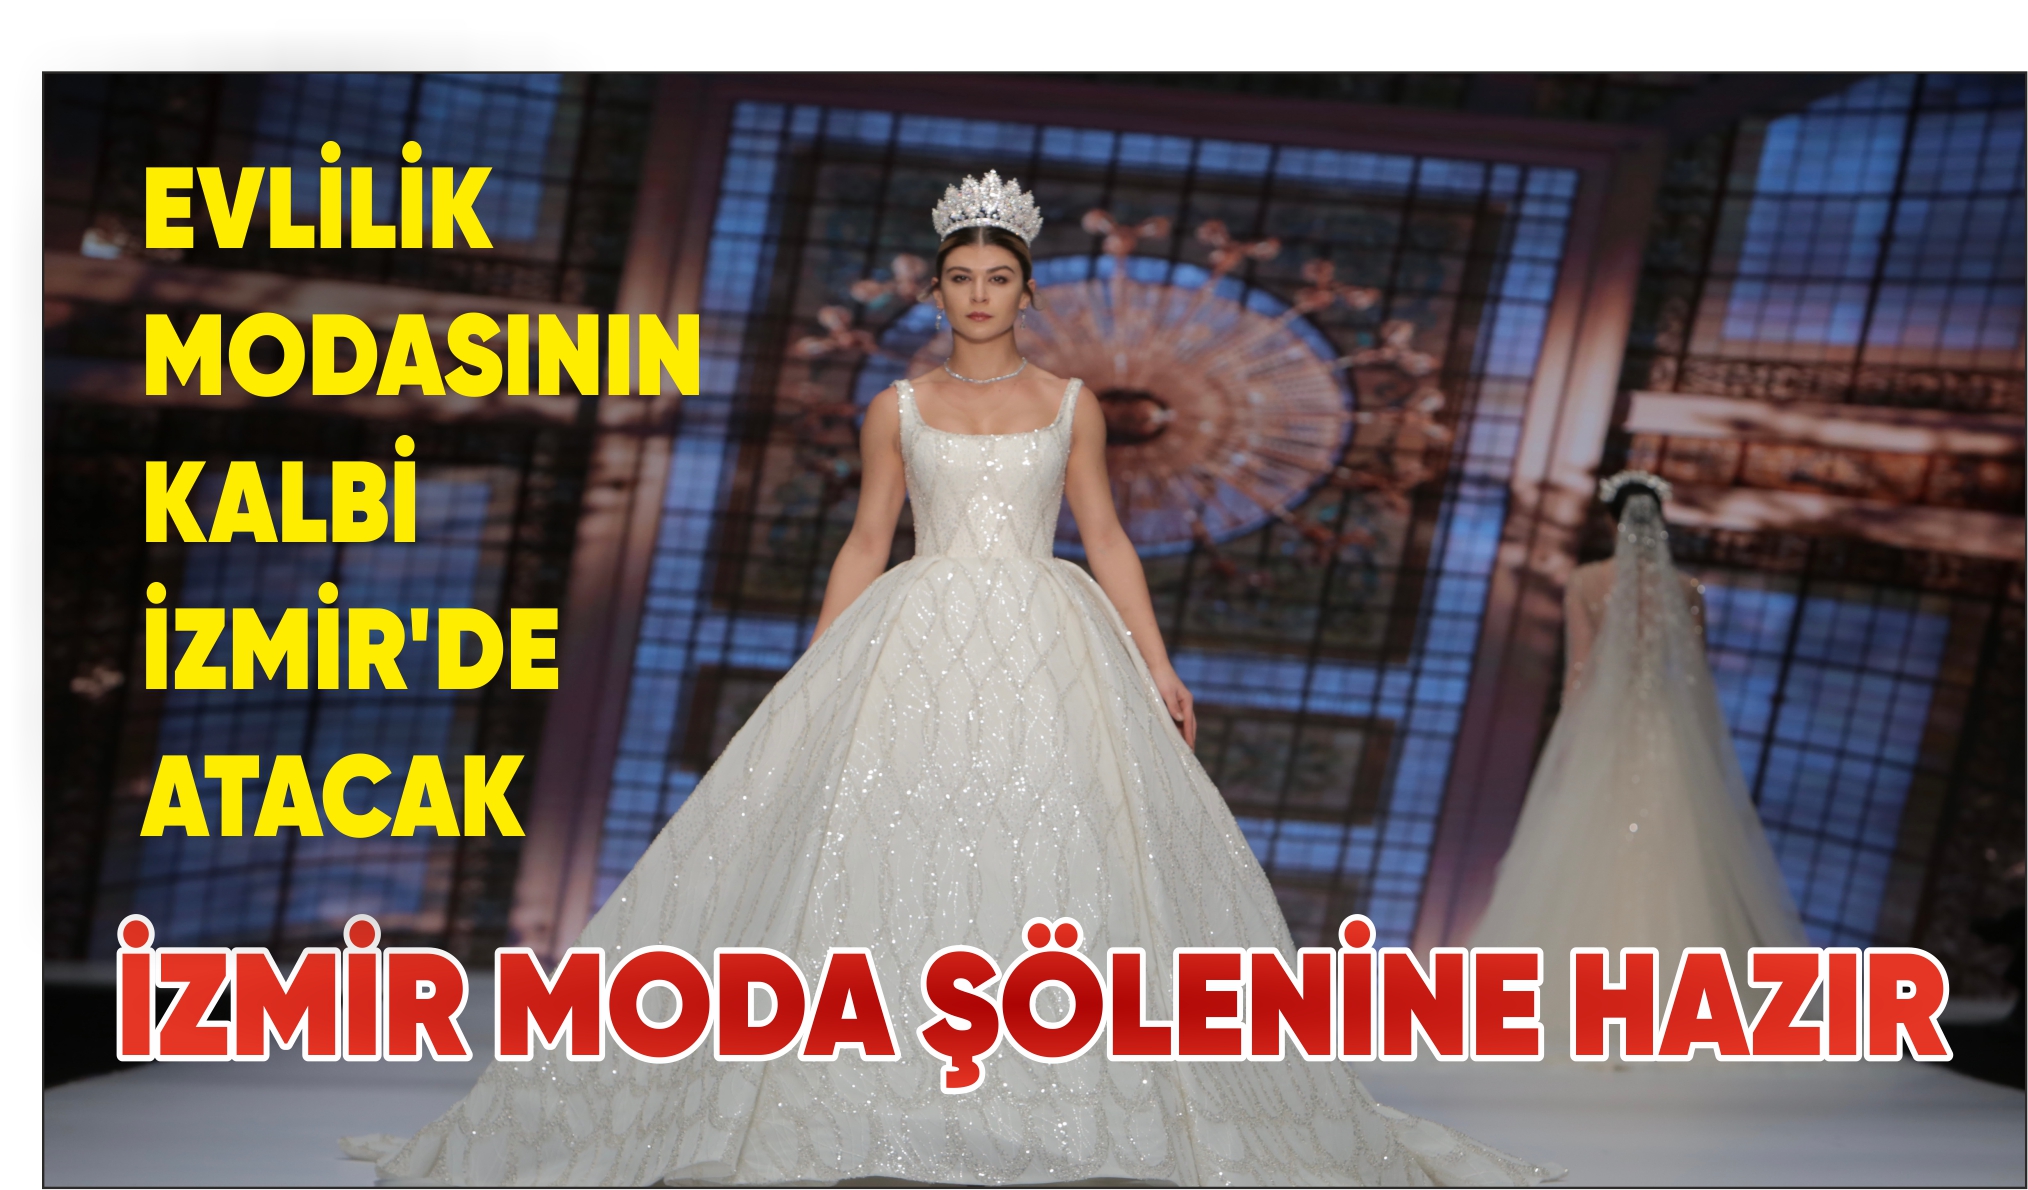 Evlilik modasının kalbi yine İzmir'de atacak